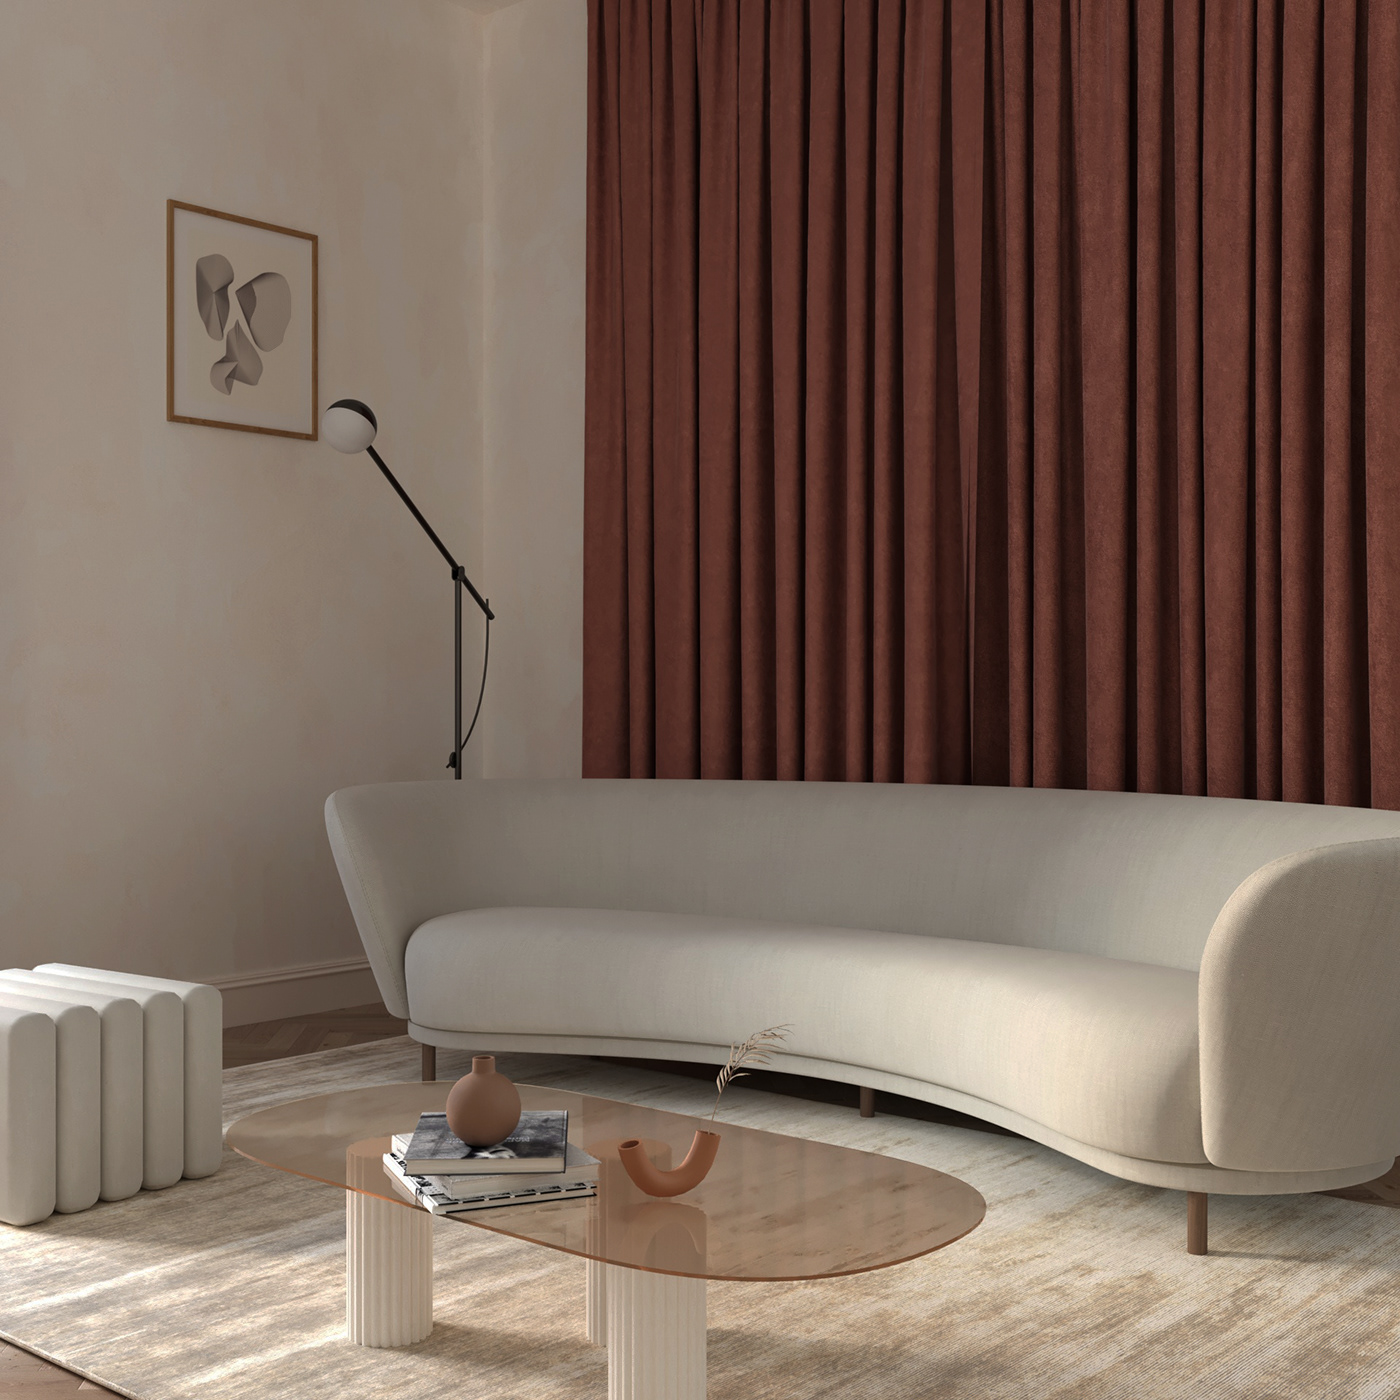 Interior interiordesign livingroom kitchen apartment beige Interior